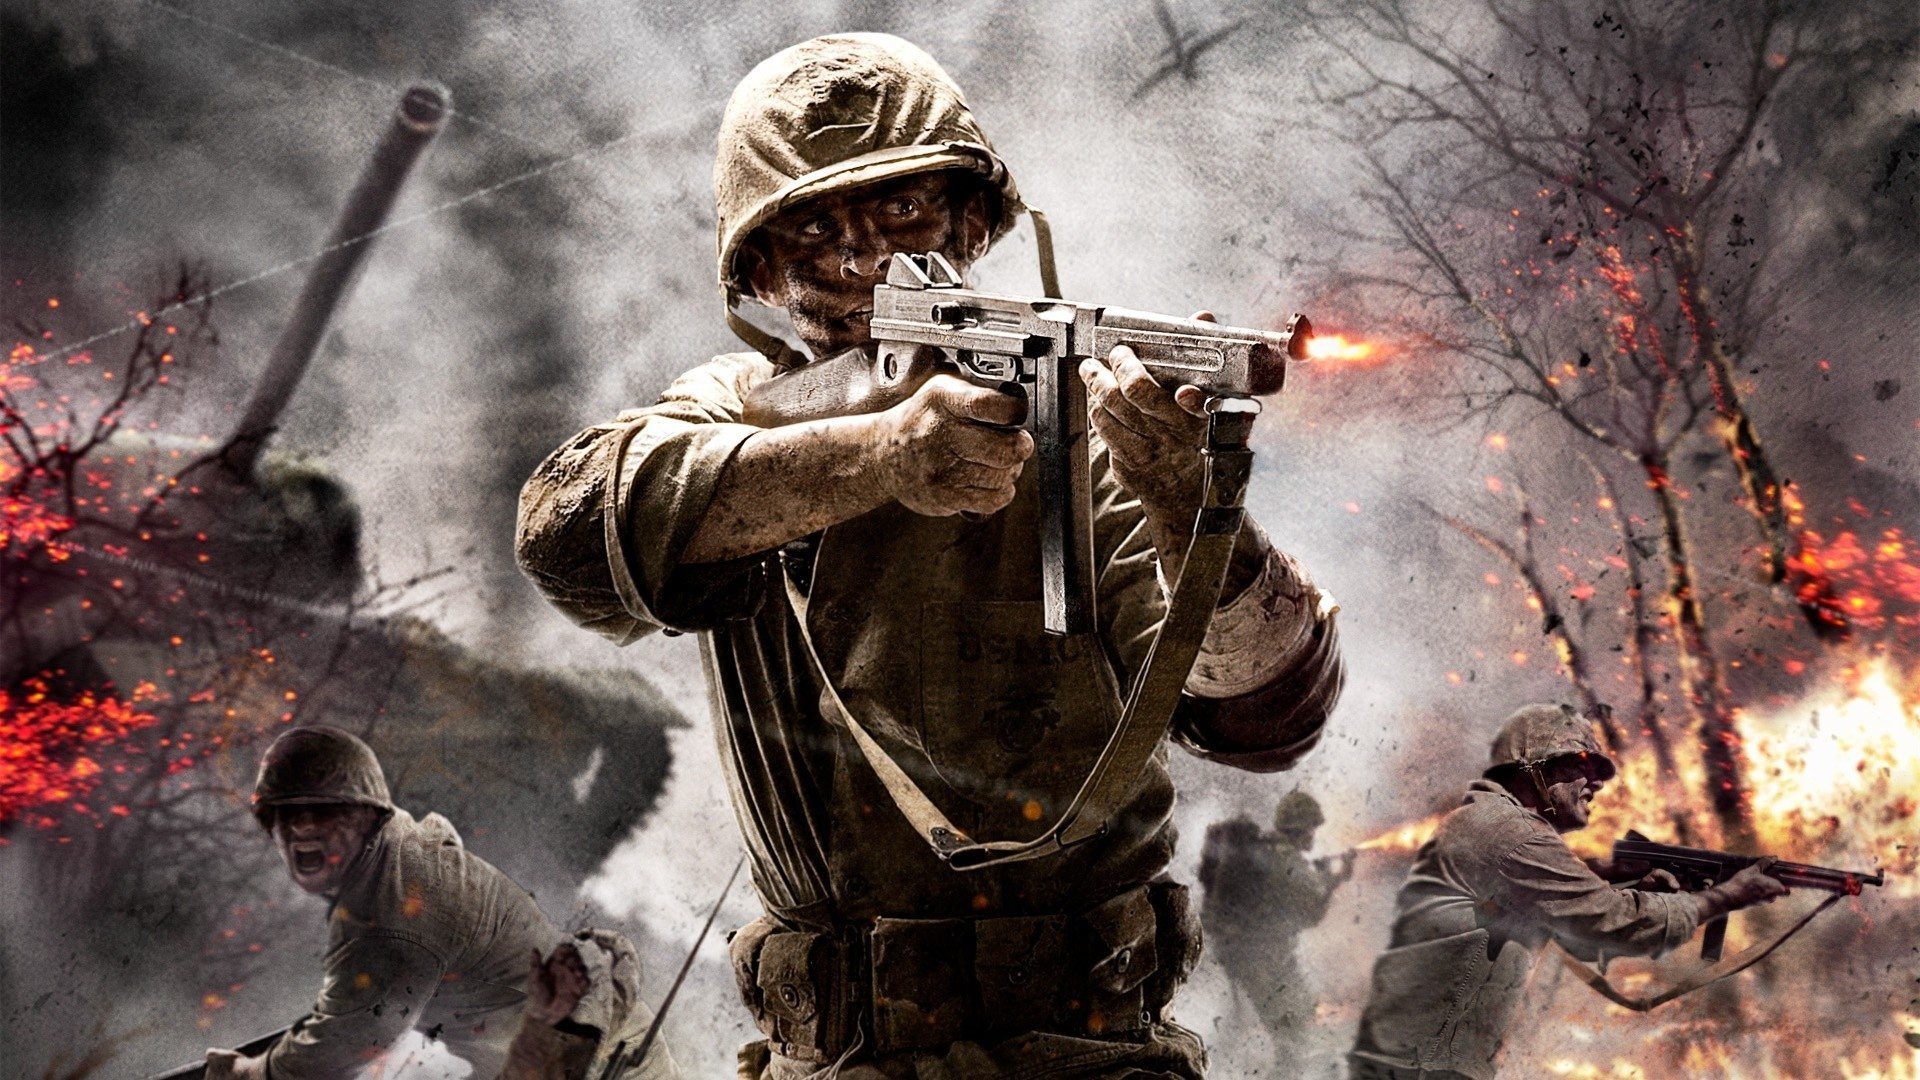 Xuất hiện thông tin đầu tiên về bộ phim Call of Duty, nhiều khả năng Tom Hardy thủ vai chính